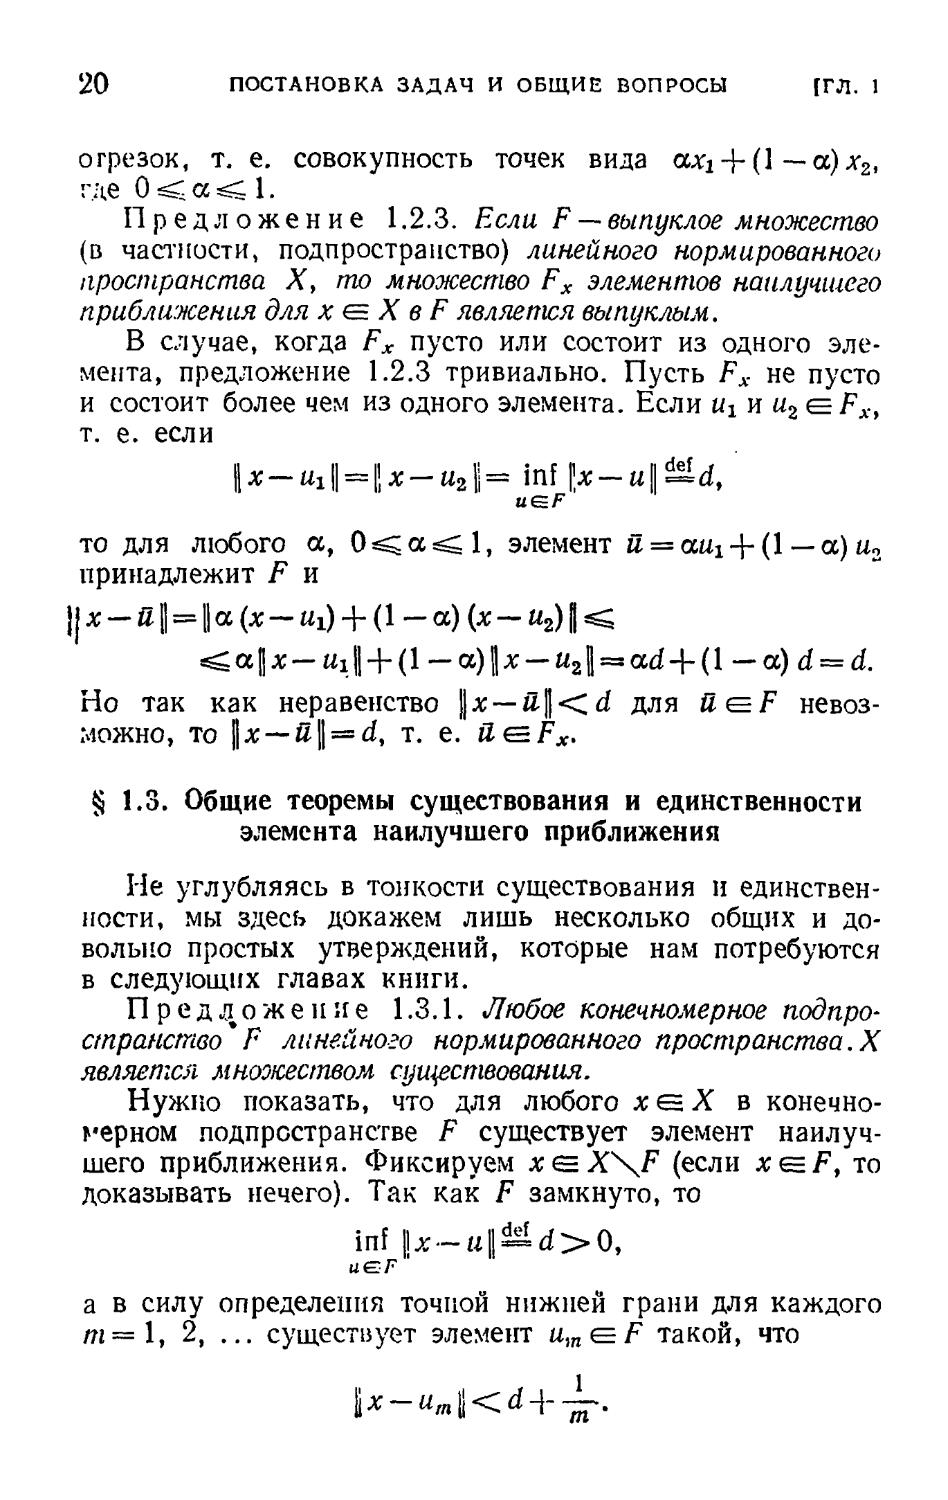 § 1.3. Общие теоремы существования и единственности элемента наилучшего приближения